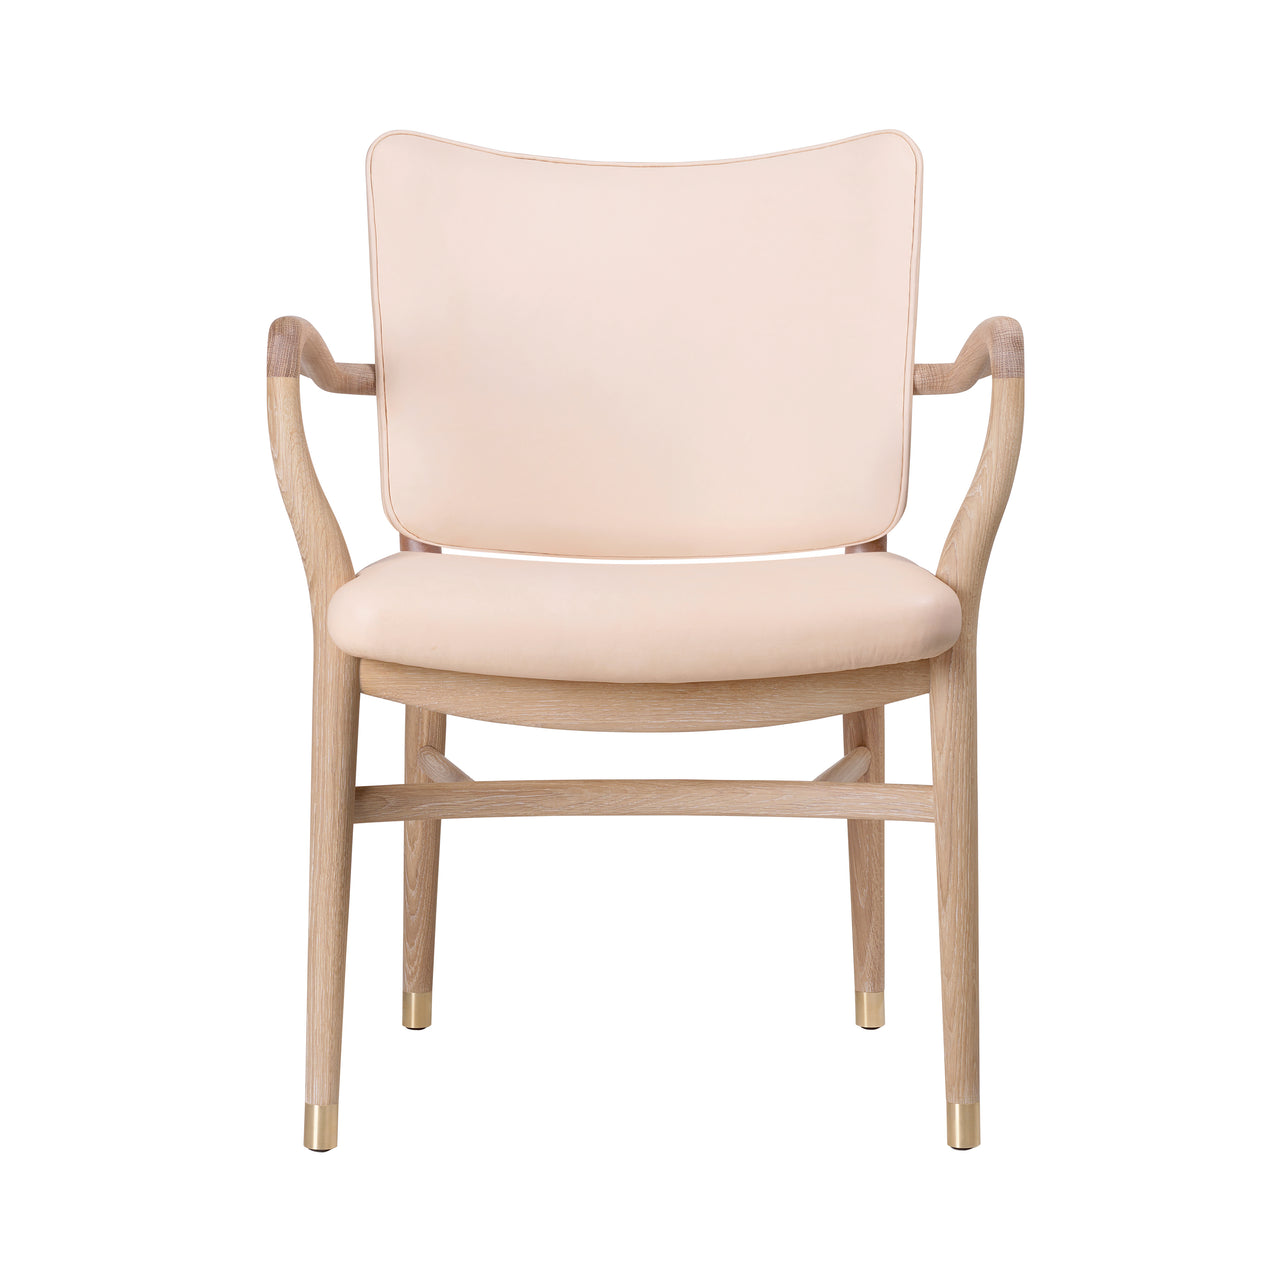 VLA61 Monarch Chair: White Oiled Oak